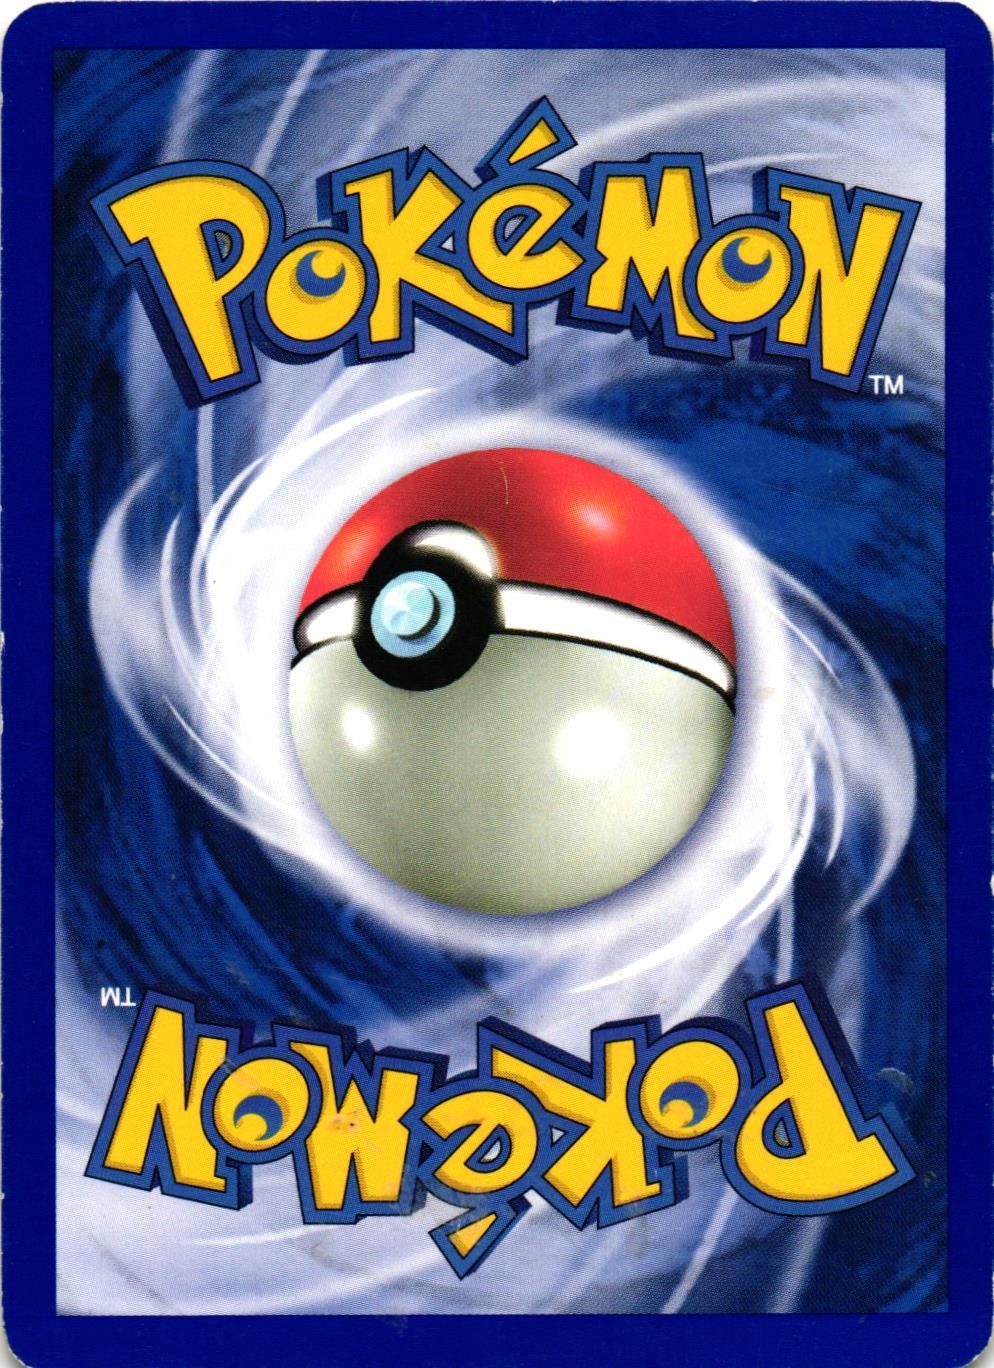 New Pokedex Uncommon 95/111 Neo Genesis Pokemon